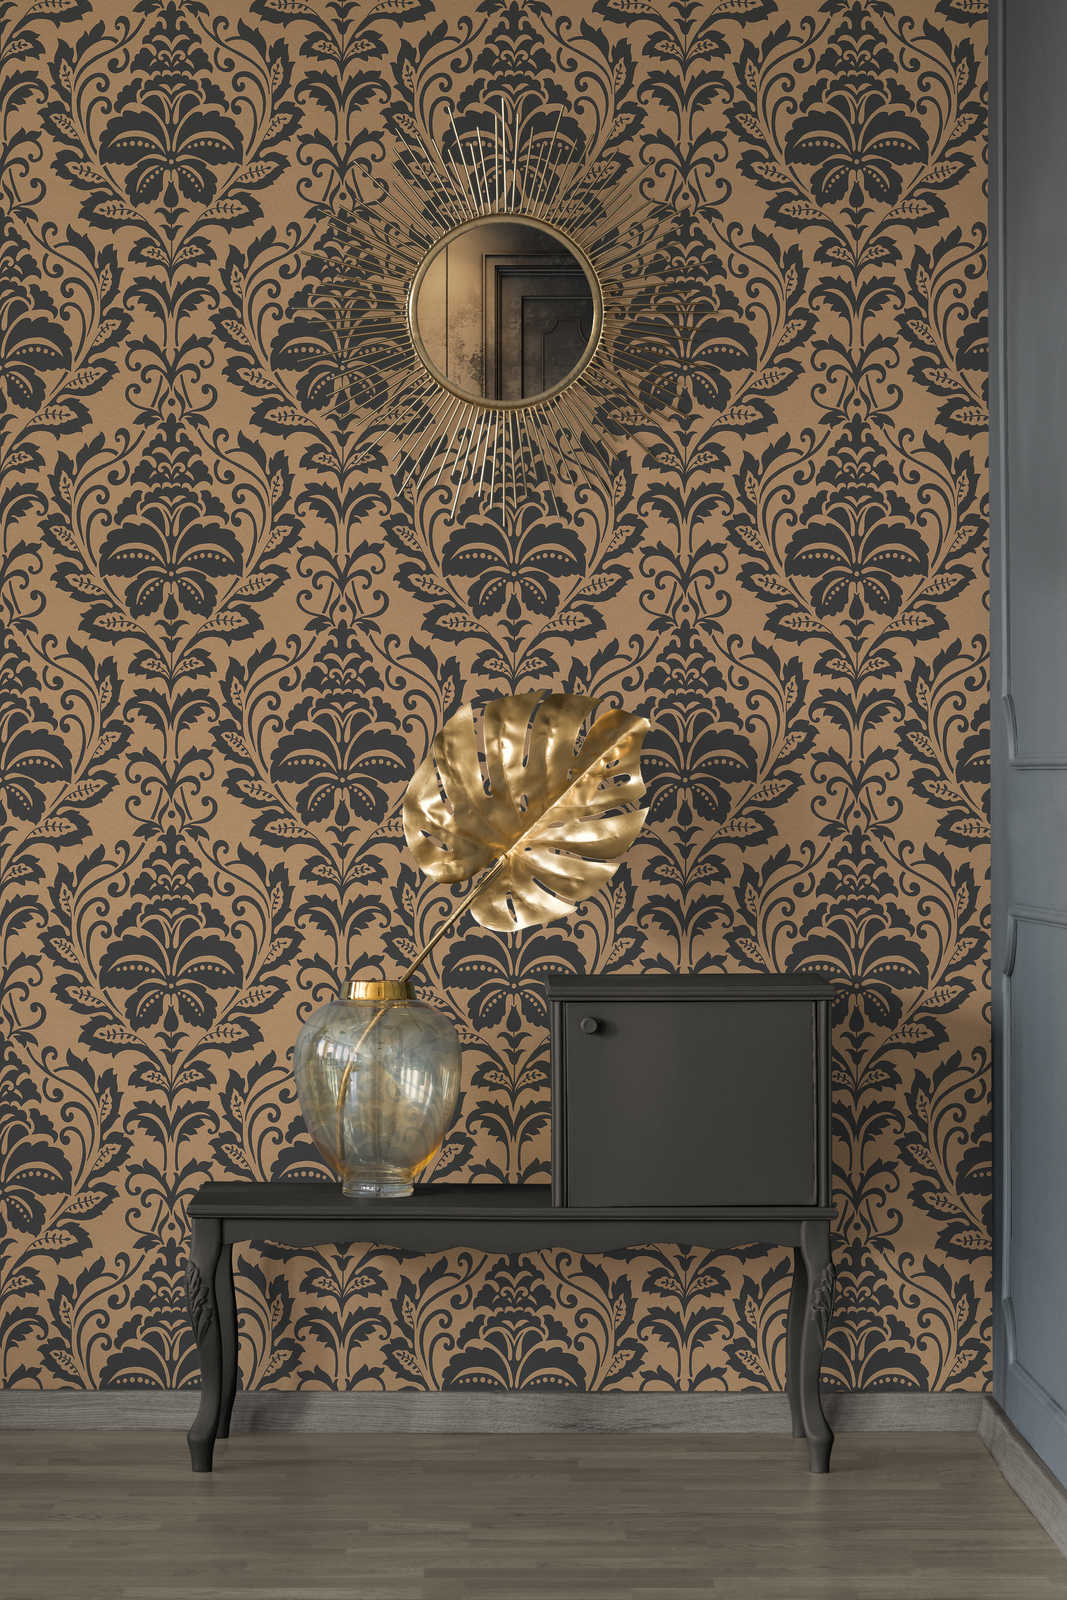             Neo classic ornament wallpaper, floral - brown, orange
        